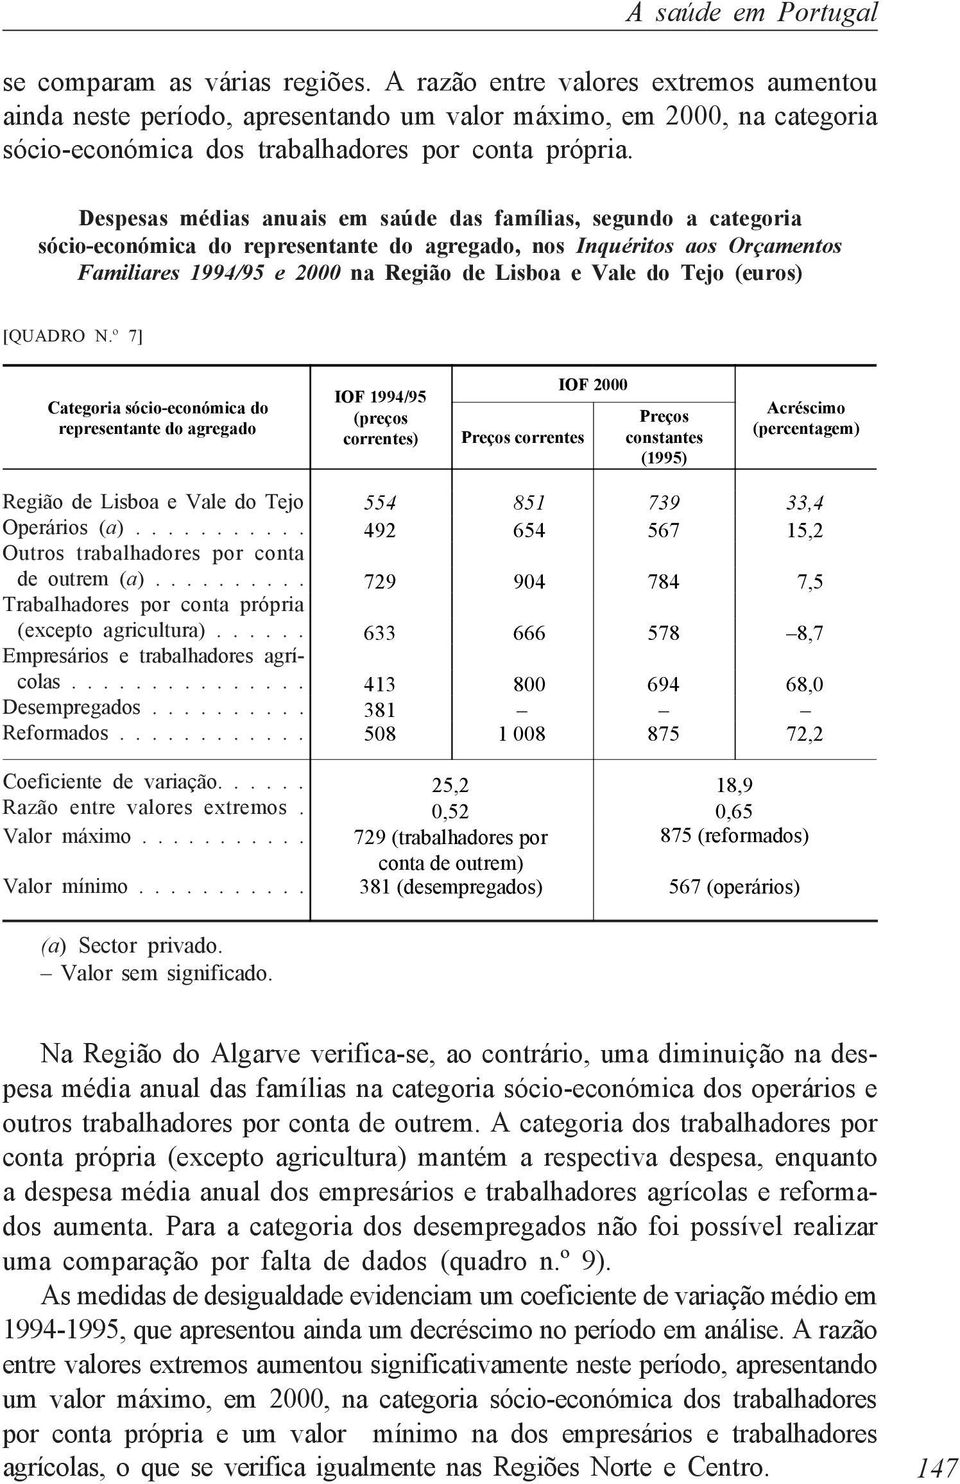 Despesas médias anuais em saúde das famílias, segundo a categoria sócio-económica do representante do agregado, nos Inquéritos aos Orçamentos Familiares 1994/95 e 2000 na Região de Lisboa e Vale do